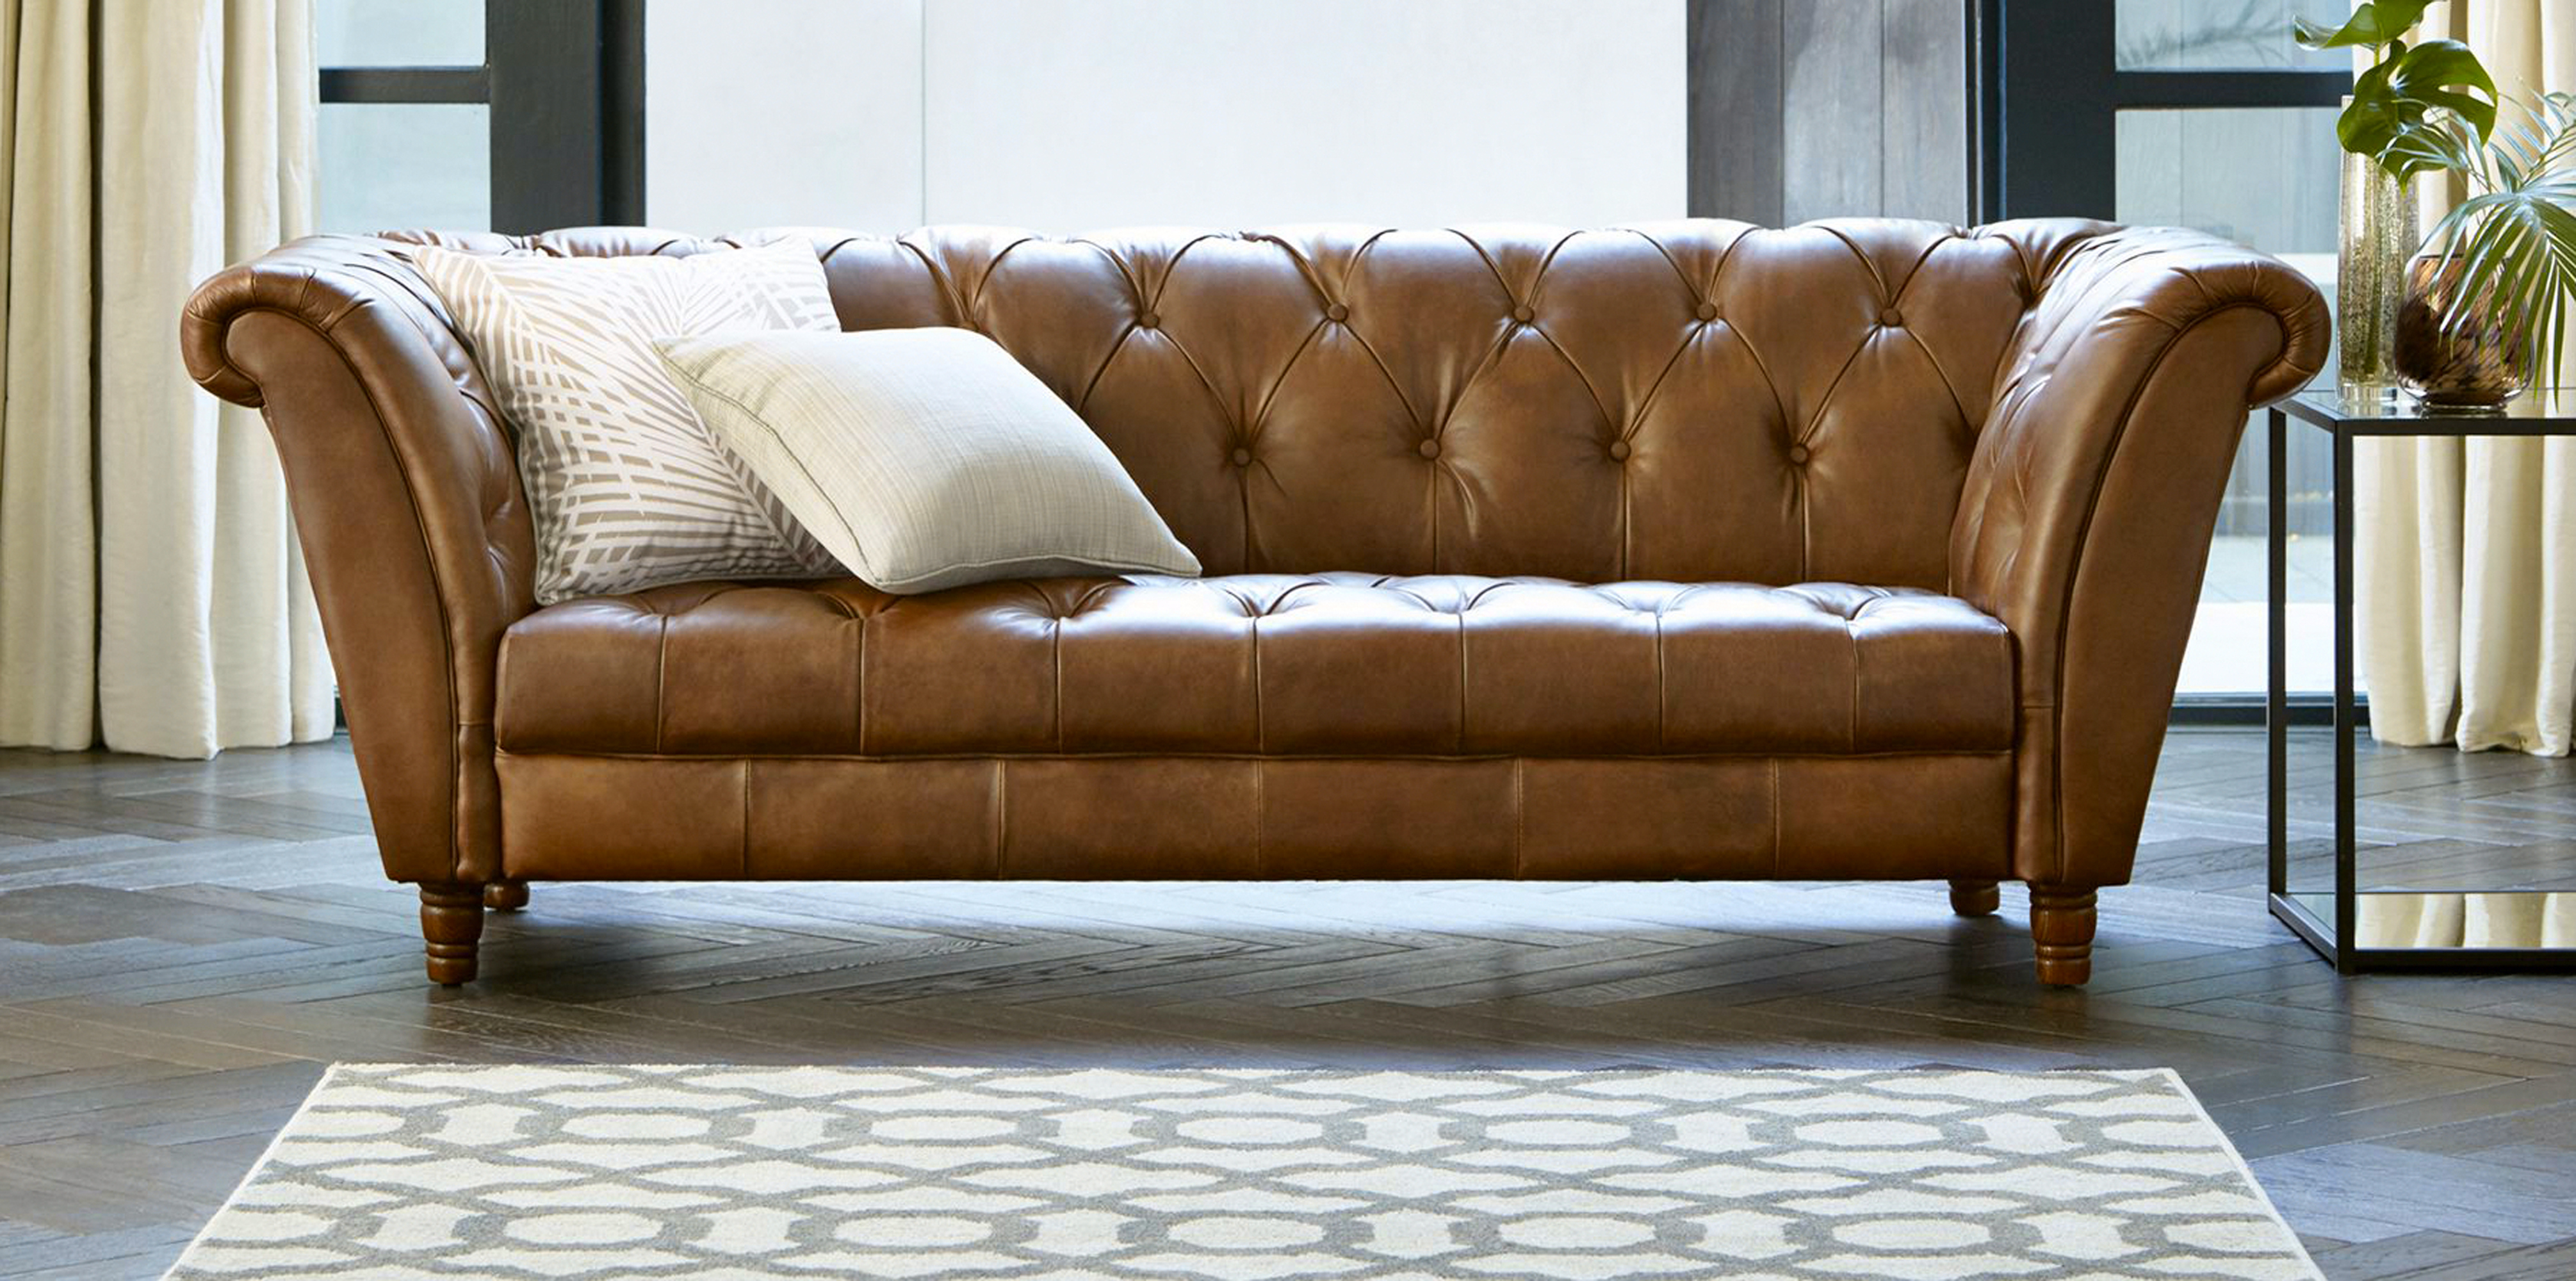 leather sofa sets design ideas